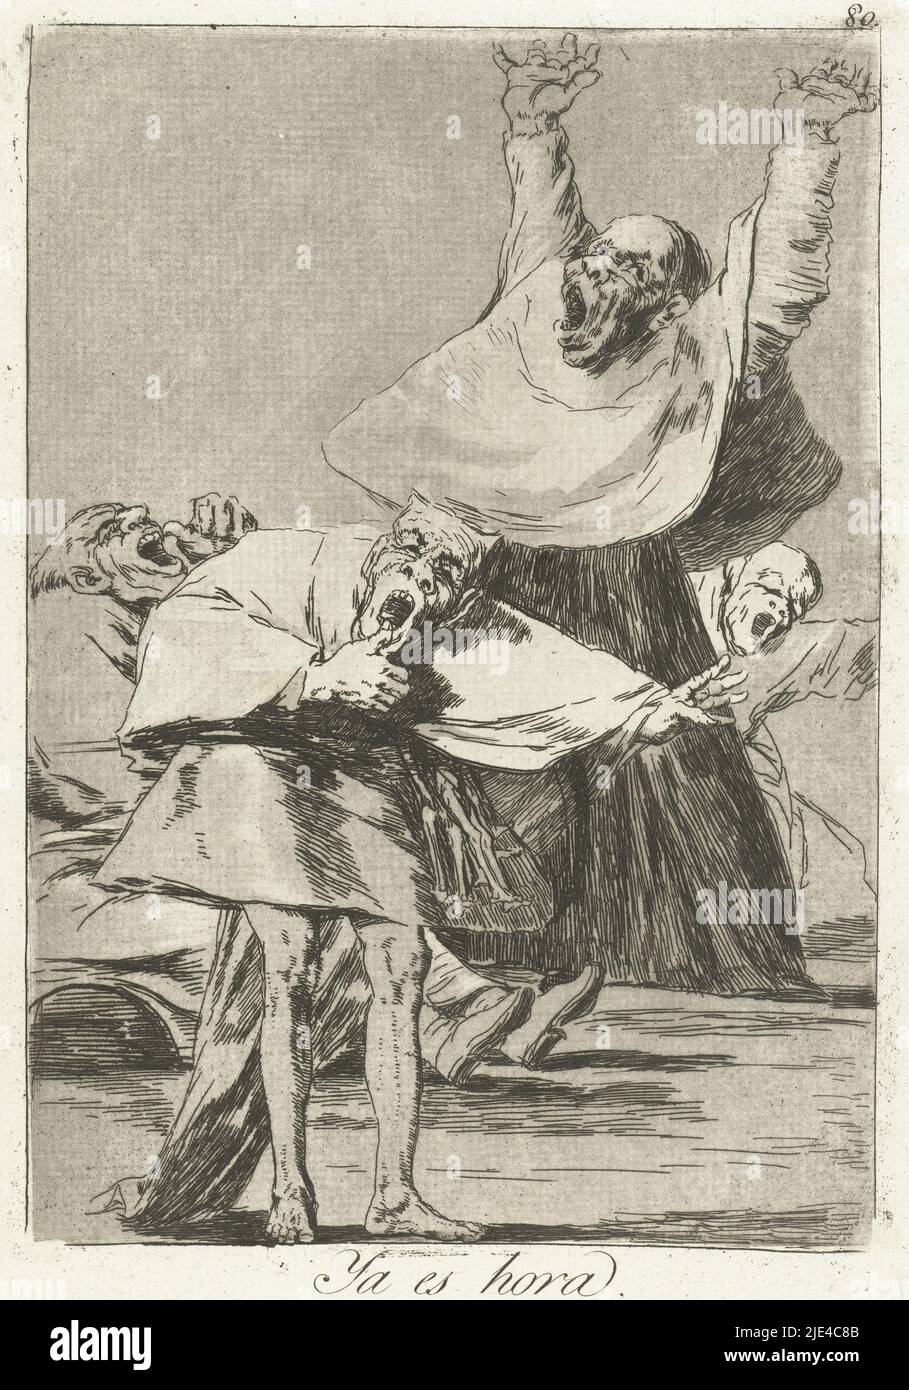 Es ist Zeit, Francisco de Goya, 1797 - 1799, vier Kobolde in kirchlicher Kleidung, mit offenem Mund. Letzter Druck in der Serie Los Caprichos., Druckerei: Francisco de Goya, Francisco de Goya, Spanien, 1797 - 1799, Papier, Ätzen, Trockenpunkt, H 215 mm × B 150 mm Stockfoto